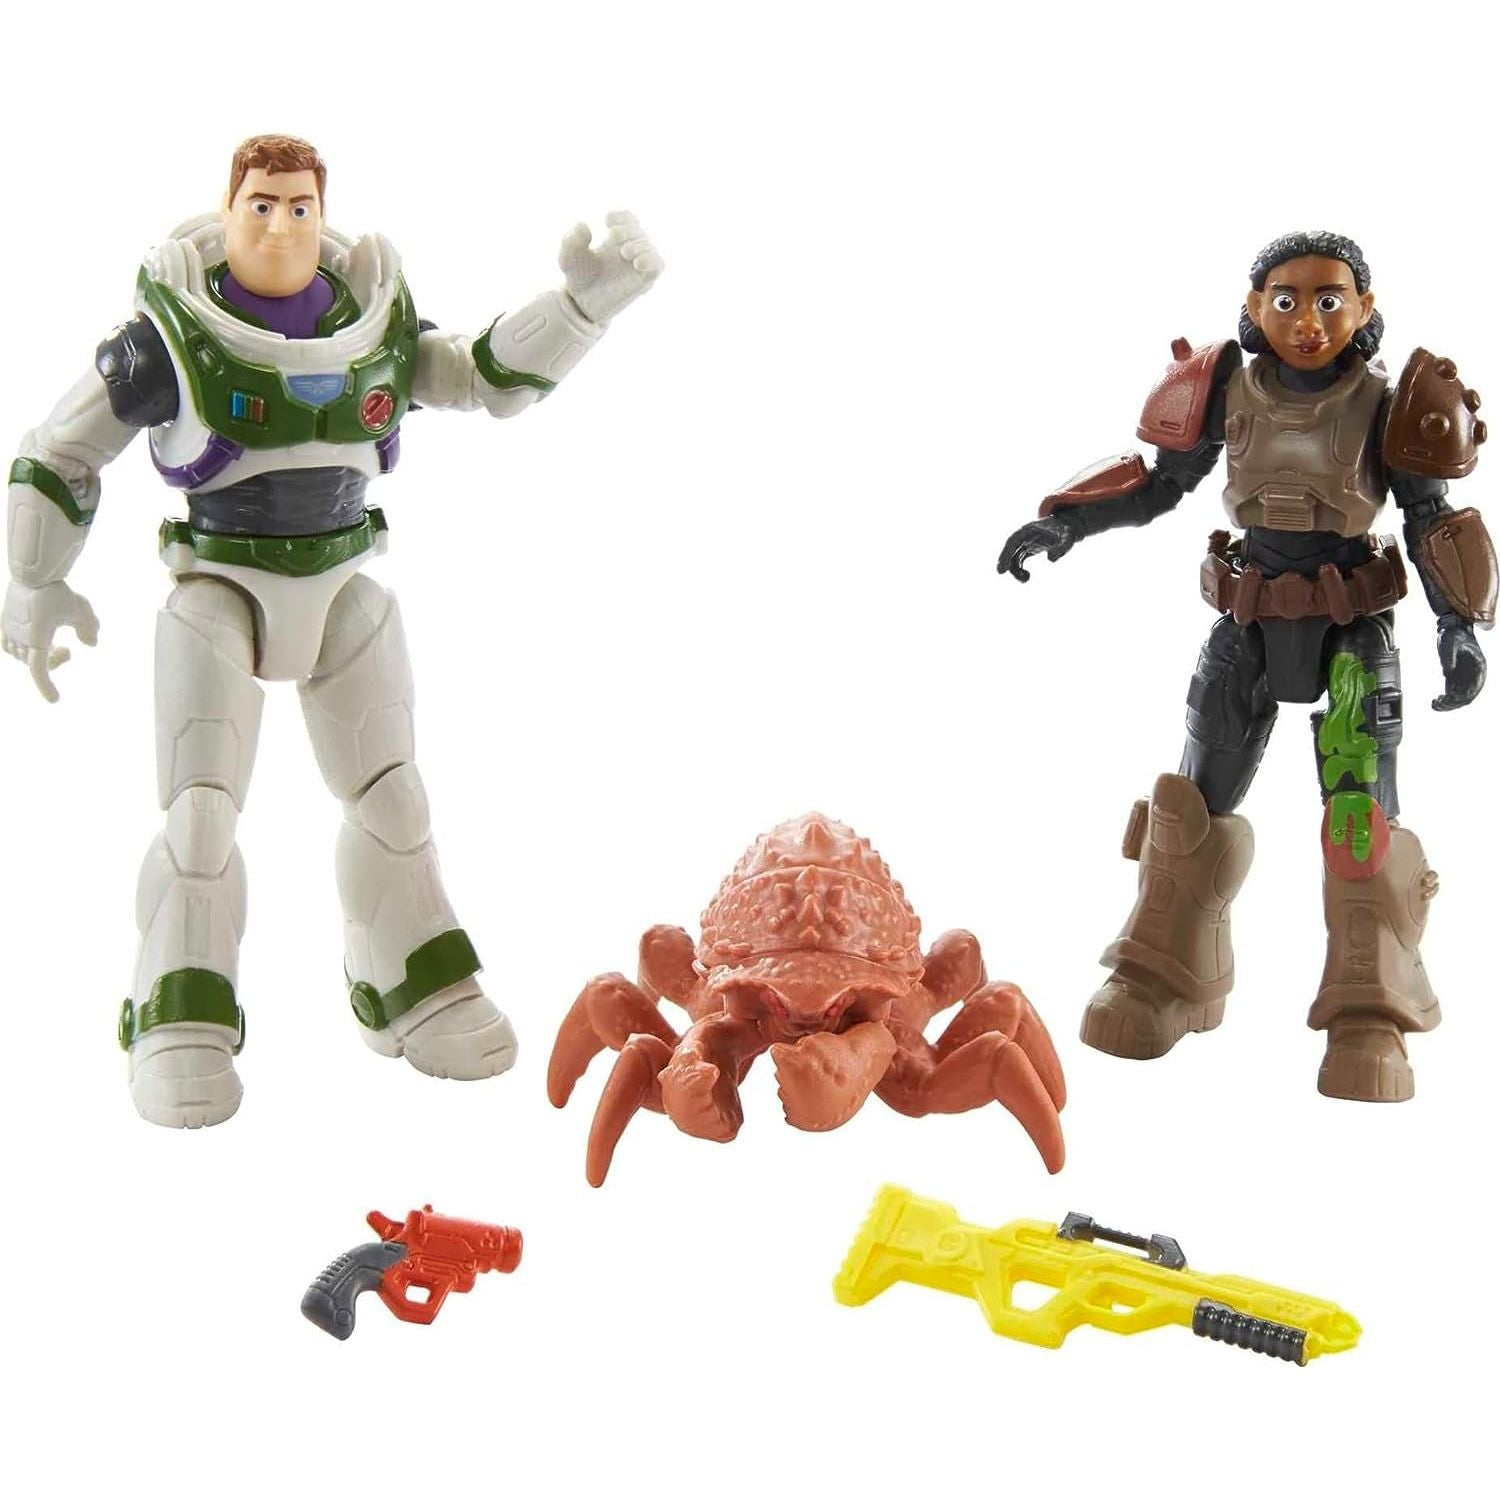 Mattel - Disney Buzz Lightyear - Space Ranger Verteidigungsfiguren & Zubehör, Exklusive Packung, ca 13cm groß, 2 Actionfiguren, Käfer & Werkzeuge